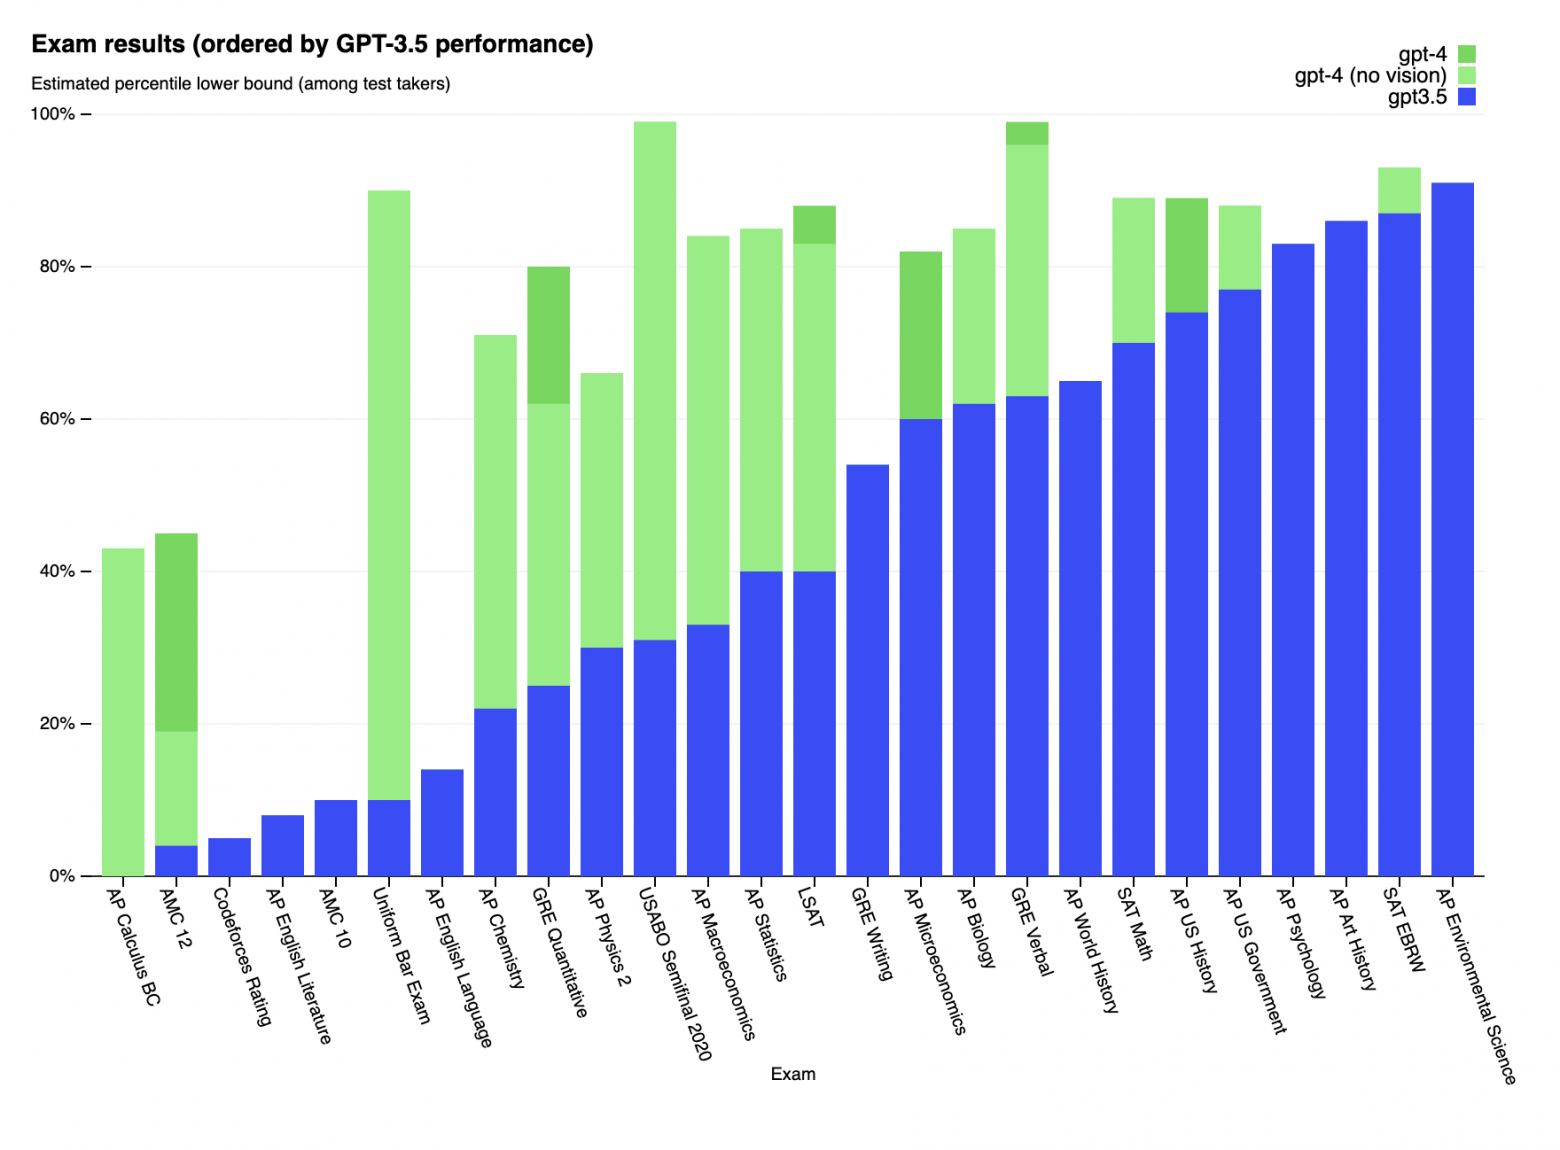 По вертикали - процент людей, сдававших реальный экзамен хуже, чем GPT-4 (зелёный) / GPT-3.5 (синий). Чем выше столбик - тем лучше.